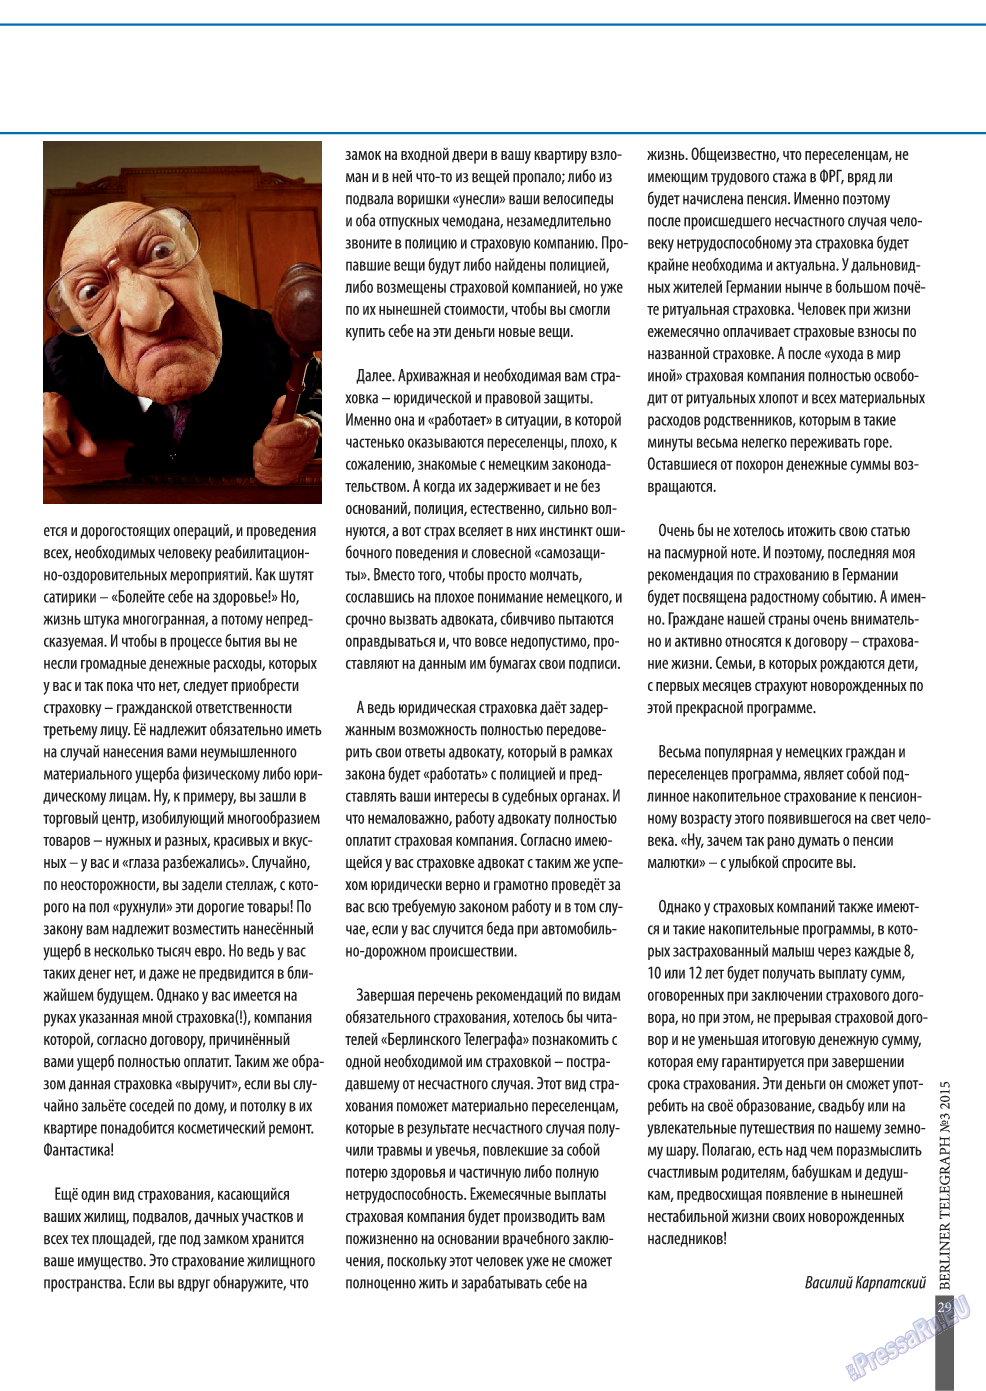 Берлинский телеграф, журнал. 2015 №3 стр.29